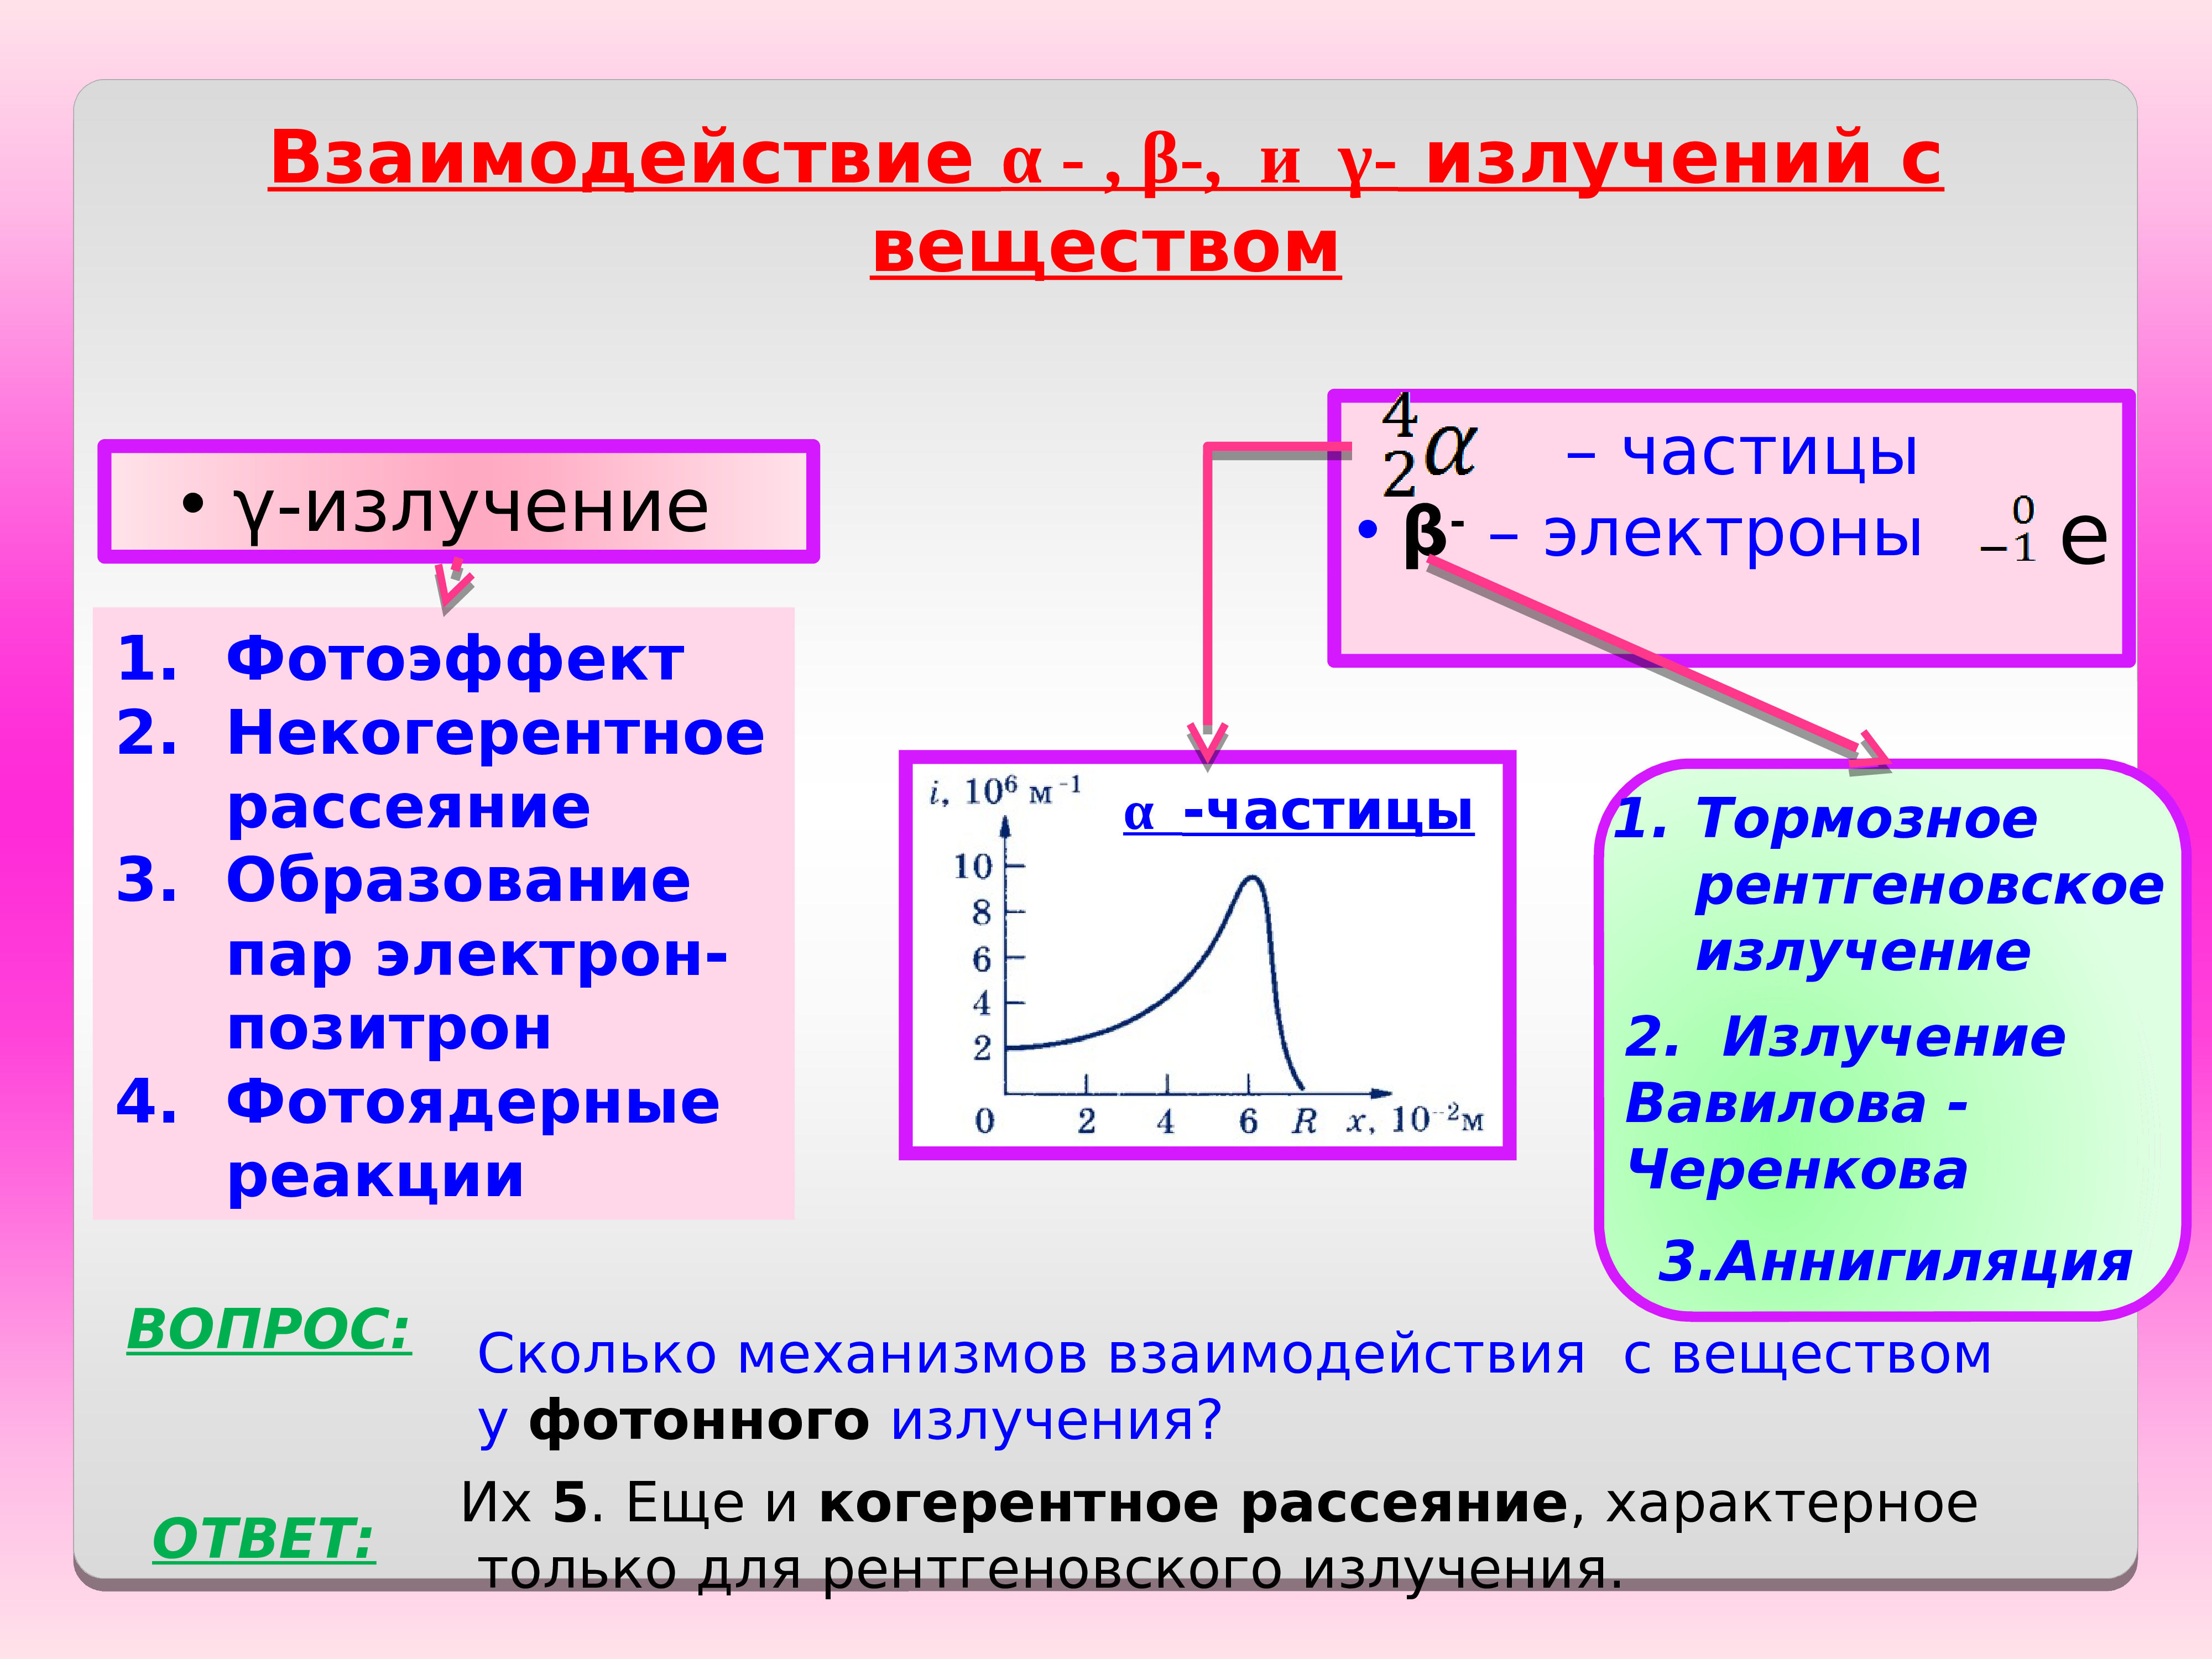 Взаимодействие с альфа частицами. Схема взаимодействия гамма-излучения с веществом. Показатели взаимодействия ионизирующего излучения с веществом. Процесс взаимодействия излучения с веществом. Взаимодействие проникающих излучений с веществом.